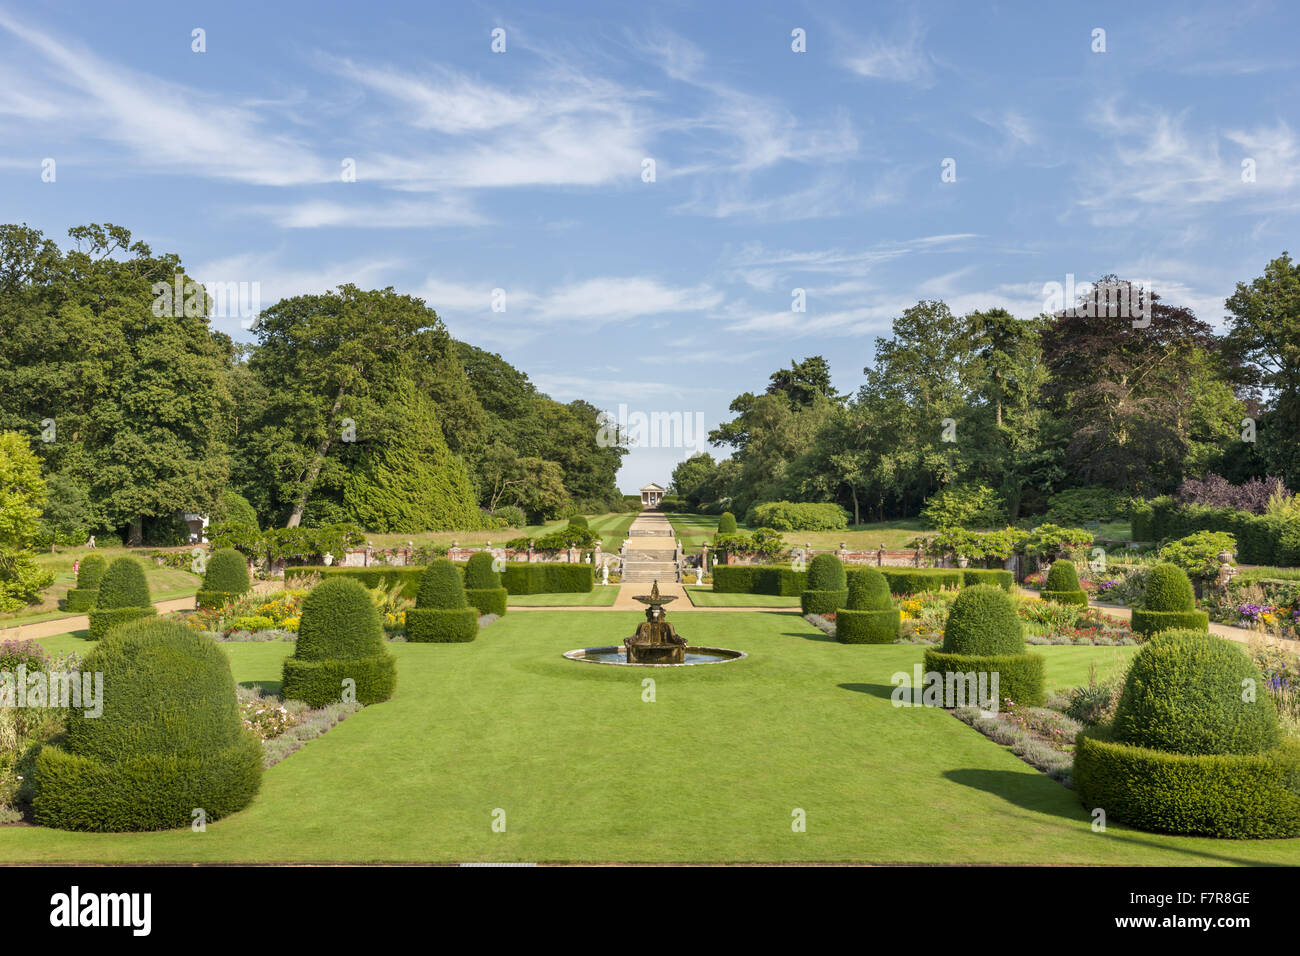 Die Parterre-Gartens betrachtet von der Long Gallery Blickling Estate, Norfolk. Blickling ist ein Turm aus rotem Backstein jakobinischen Herrenhaus, sitzen in wunderschönen Gärten und Parks. Stockfoto